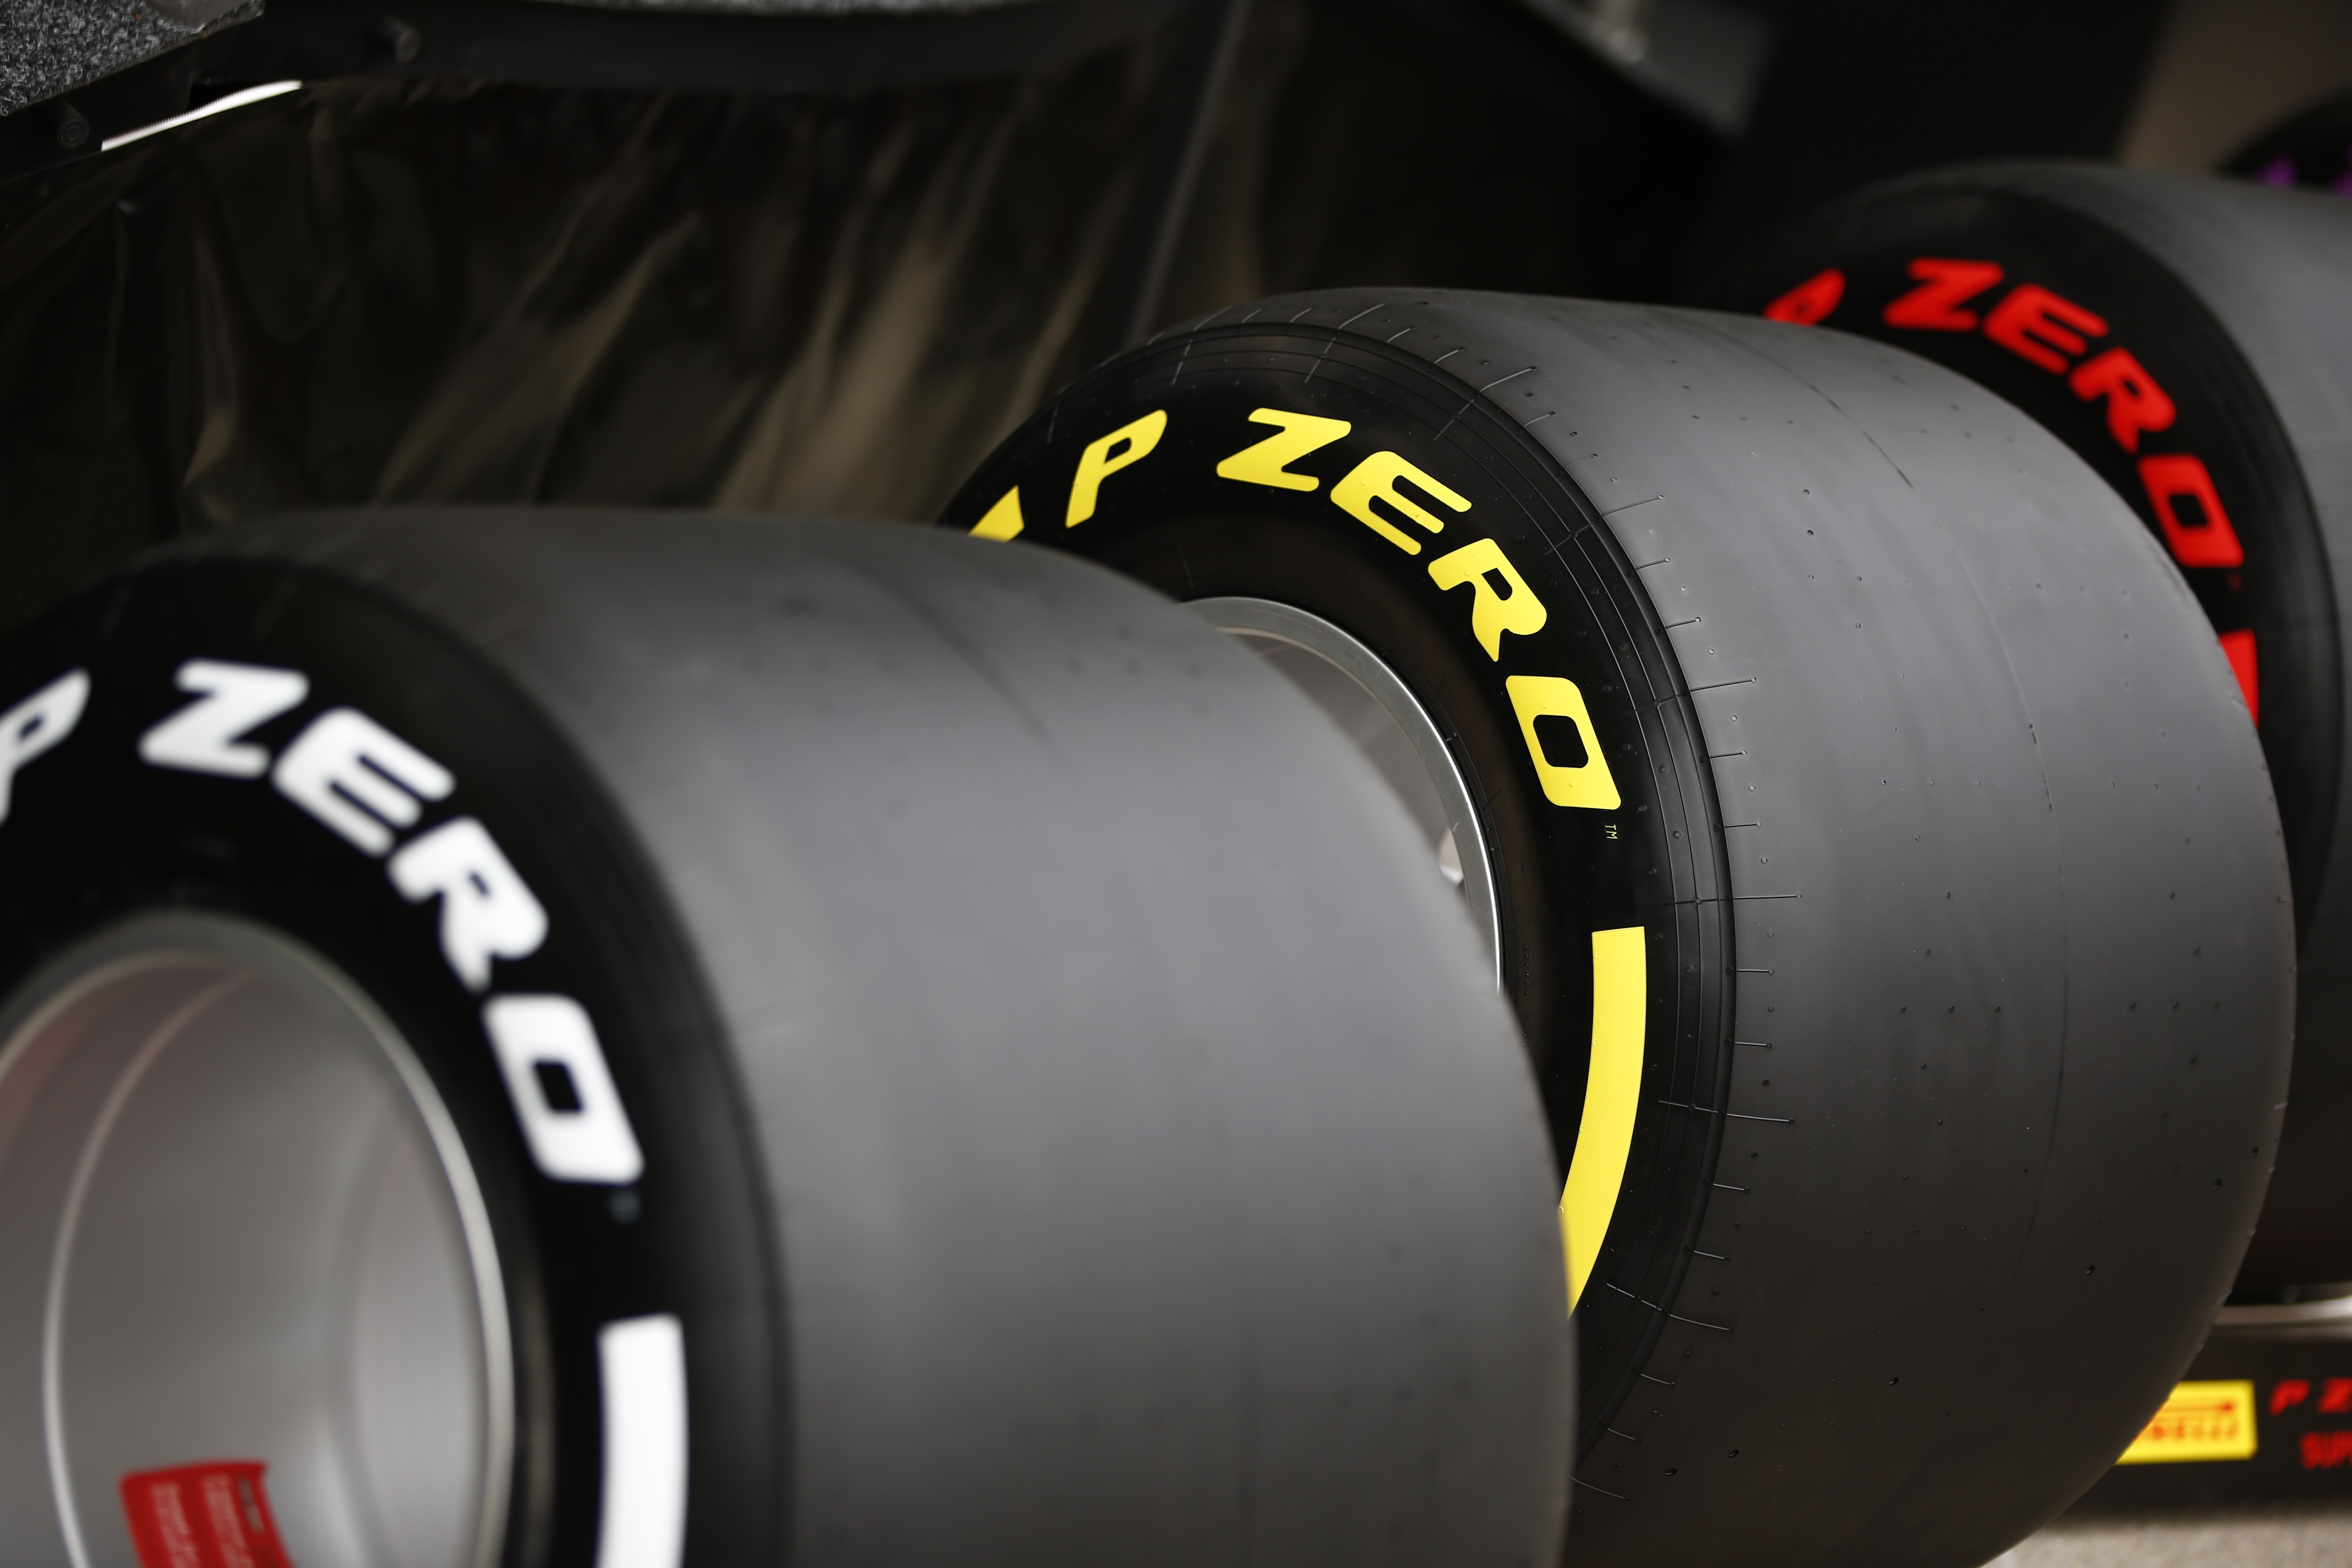 Reporte Pirelli, previo al Japón GP, “grandes y demandantes curvas”